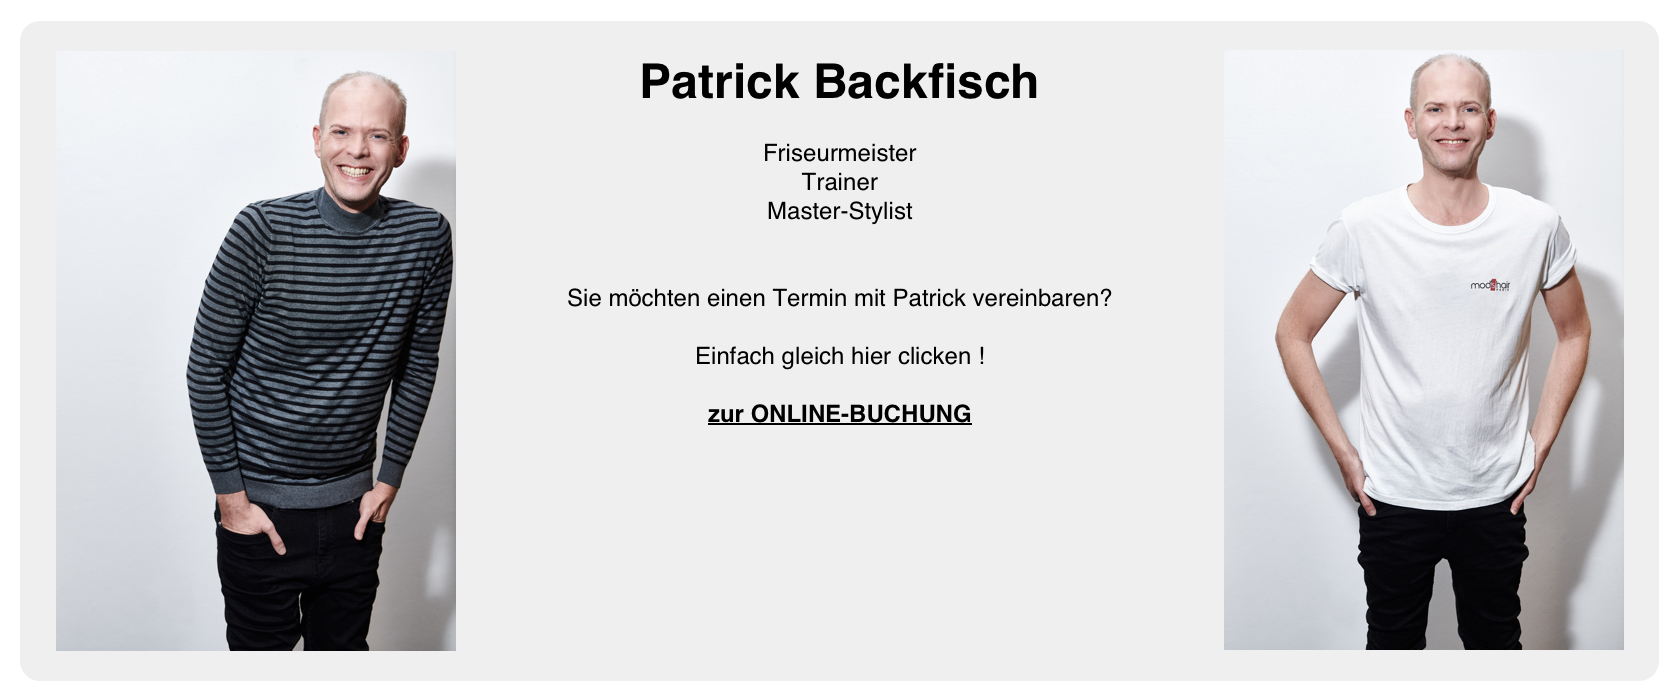 Patrick Backfisch